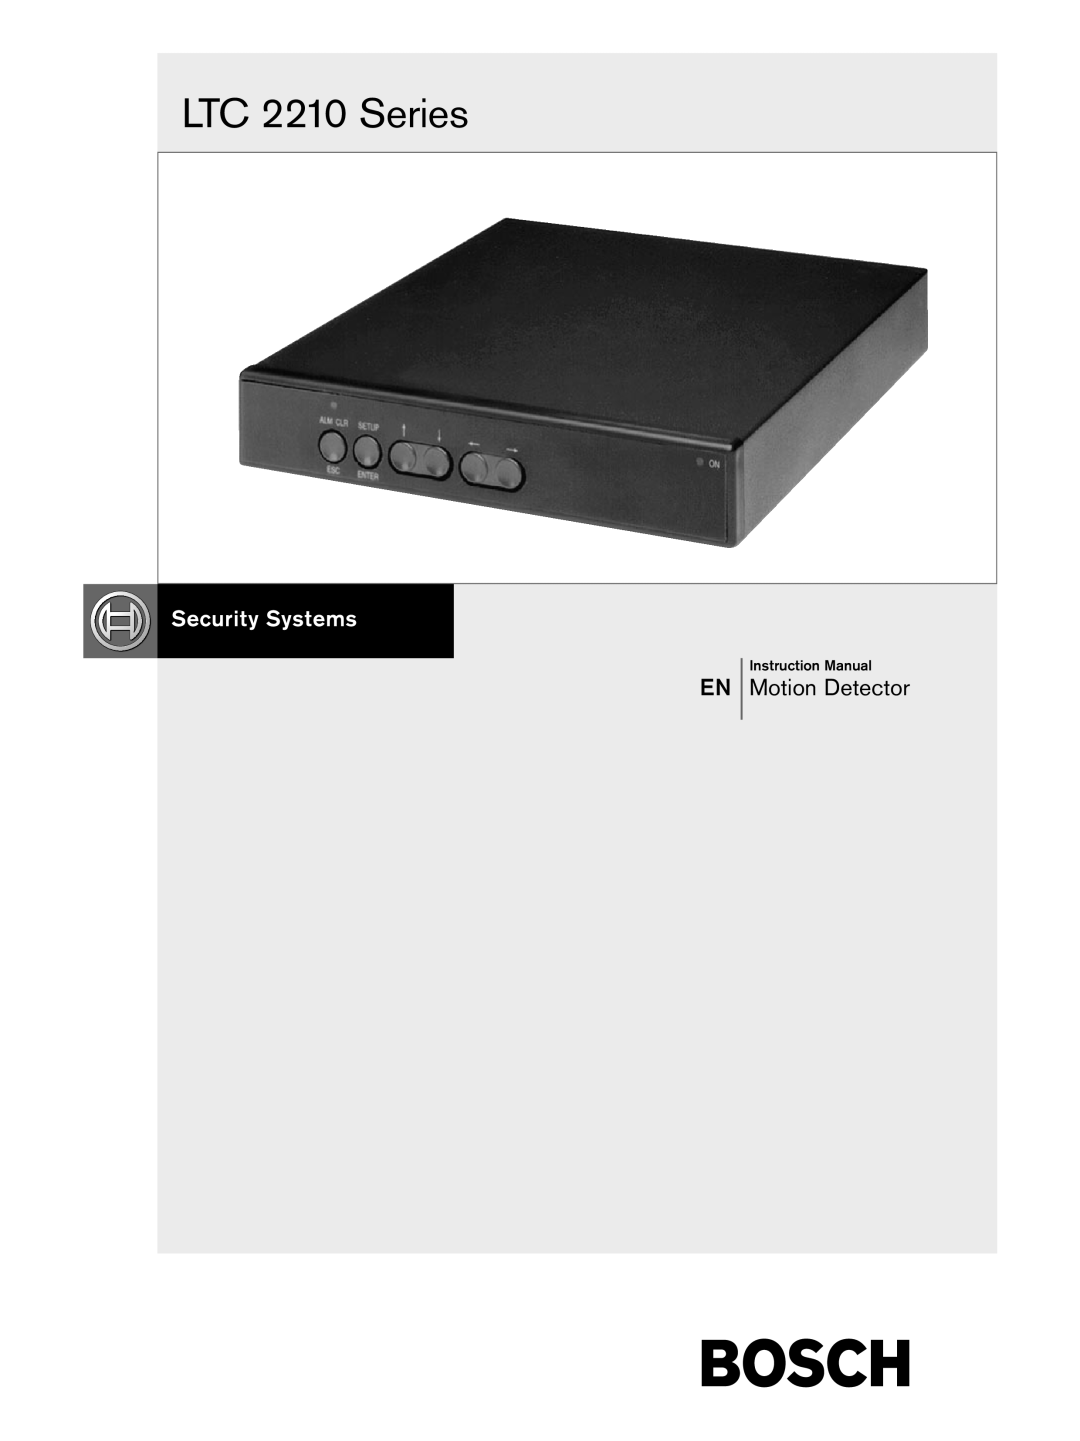 Bosch Appliances instruction manual LTC 2210 Series, EN Motion Detector 